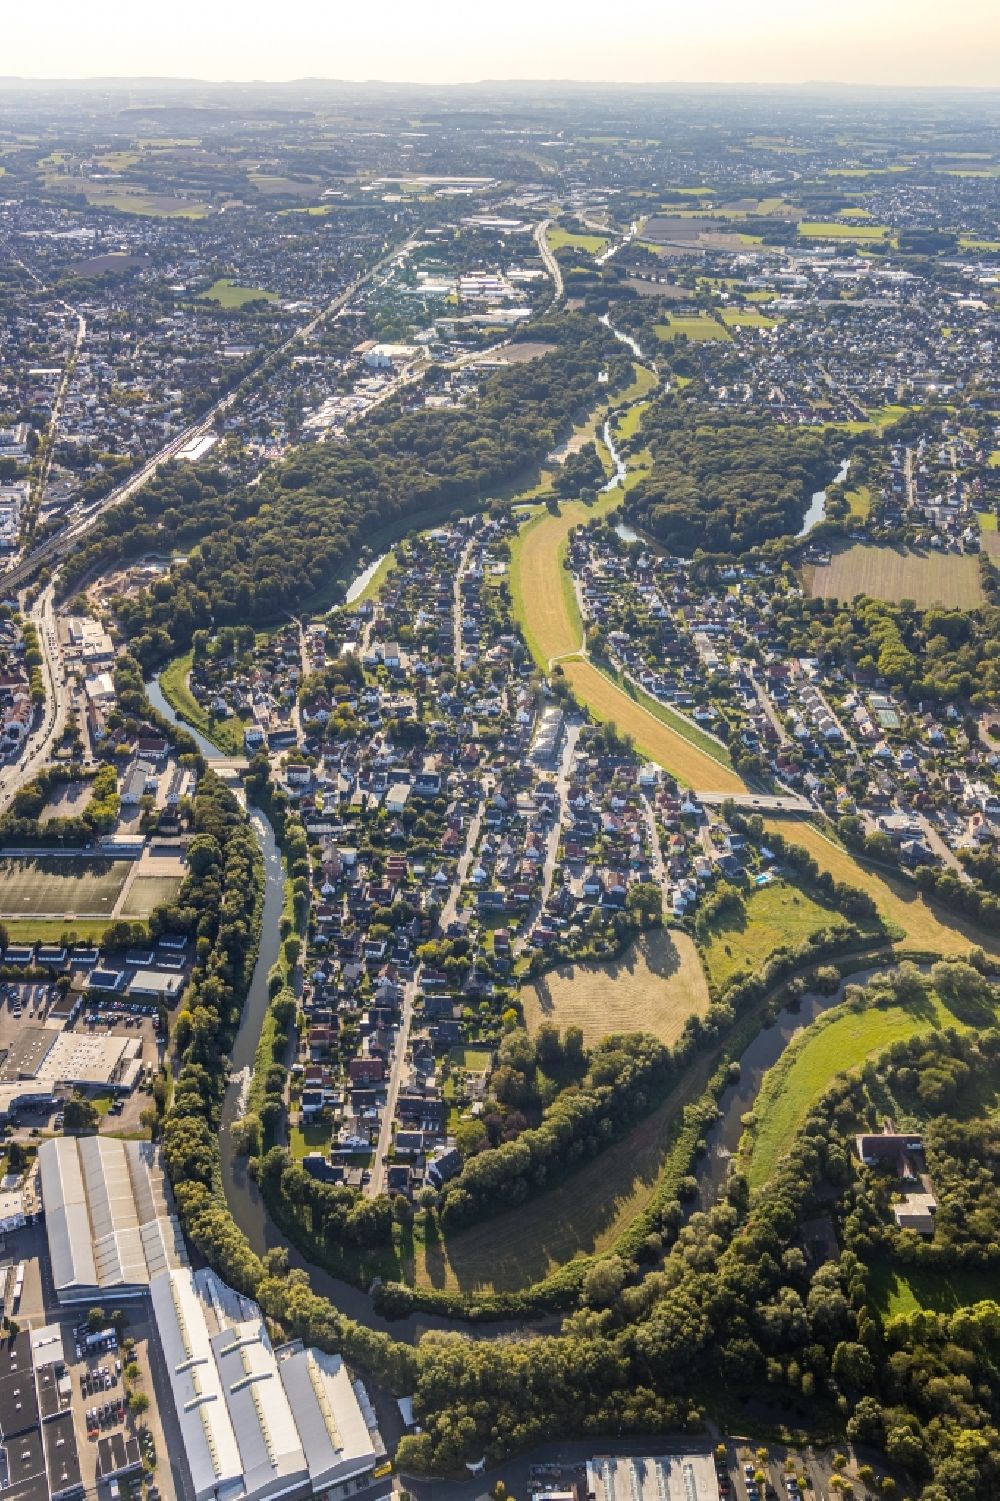 Luftbild Bad Oeynhausen - Uferbereiche am Weser Flußverlauf mit Einfamilienhaussiedlung in Bad Oeynhausen im Bundesland Nordrhein-Westfalen, Deutschland